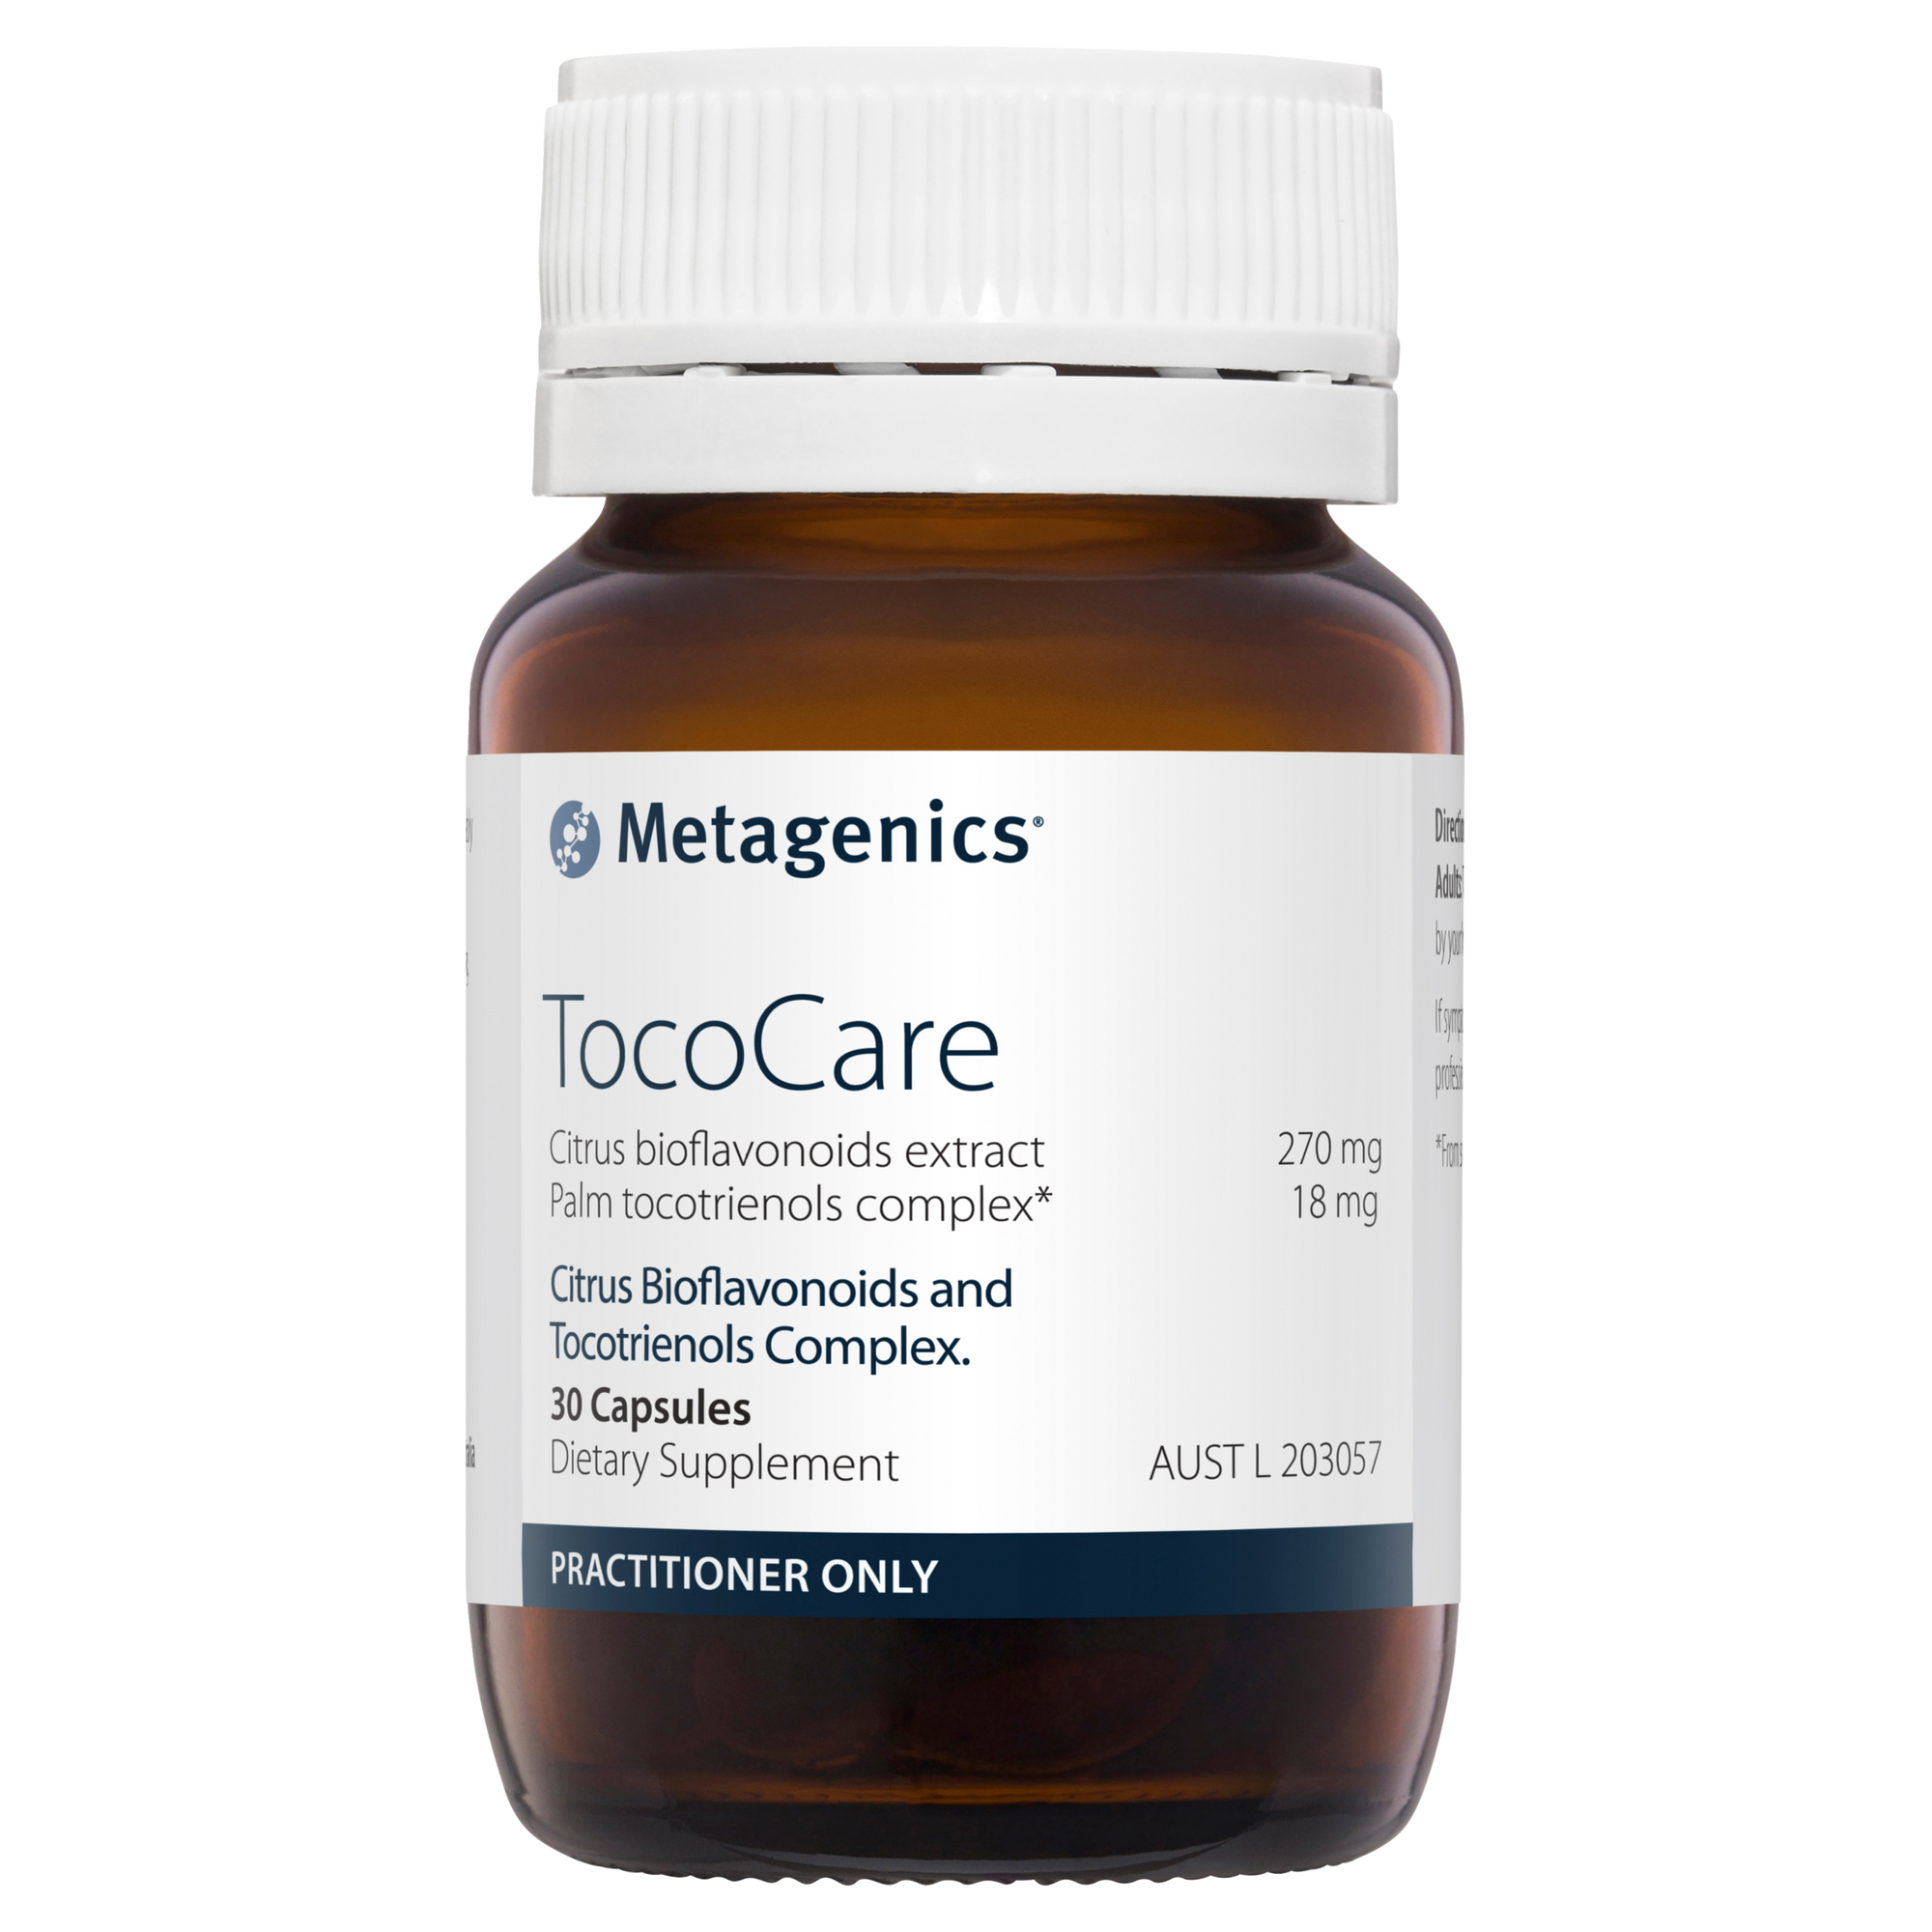 Metagenics TocoCare 30 Capsules